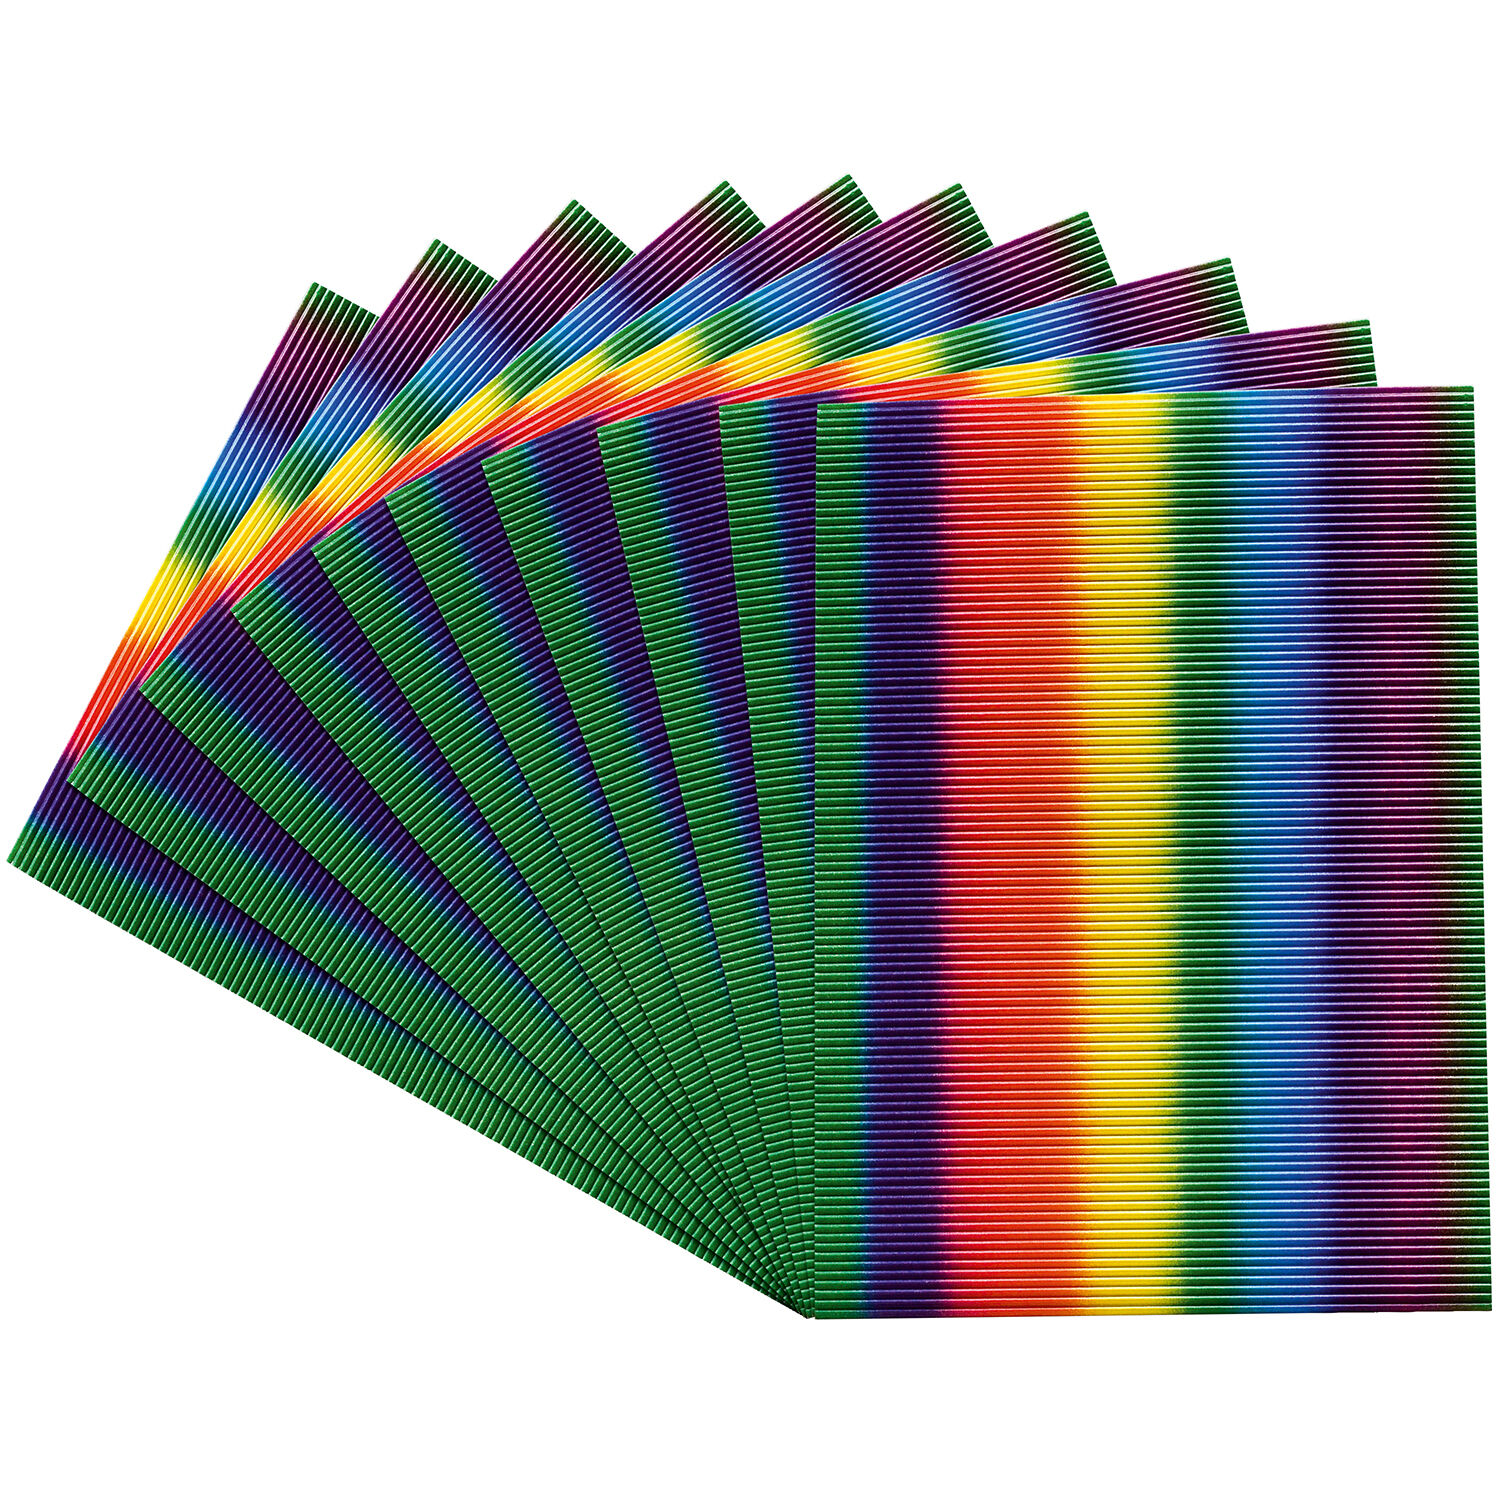 NEU Wellpappe Sortiment Regenbogenfarben, 10 Bogen, 25 x 35 cm Bild 2